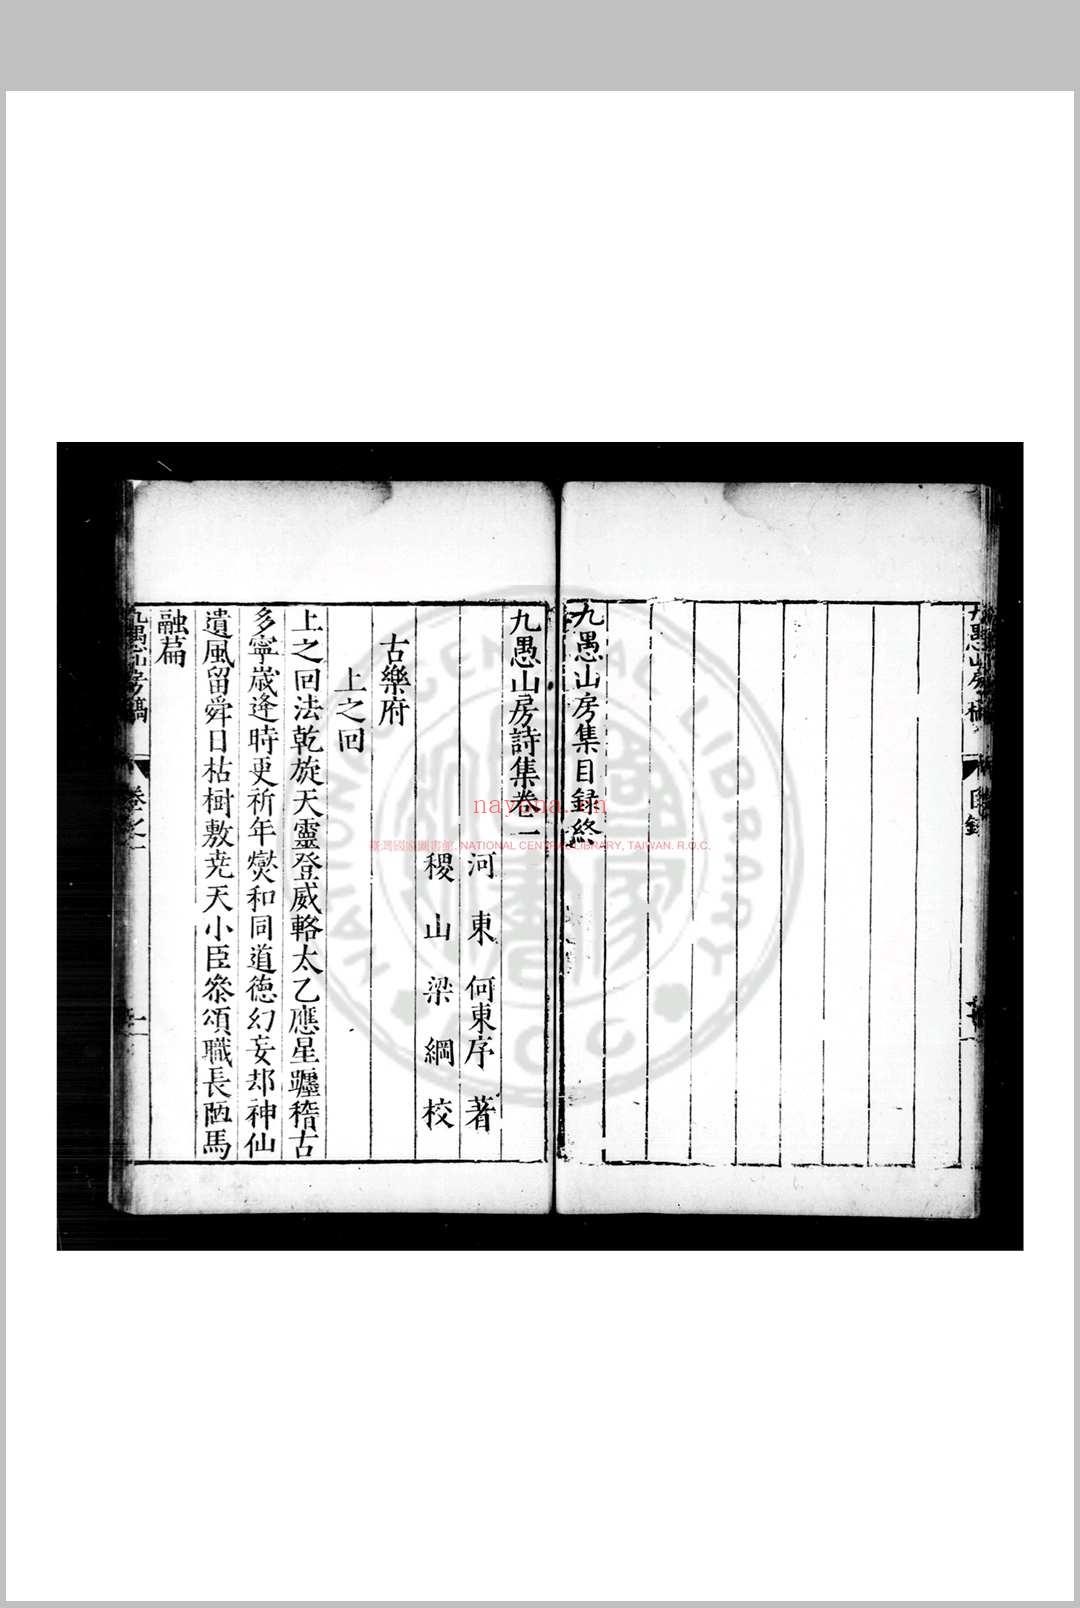 九愚山房诗集 (明)何东序撰 明万历间(1573-1620)刊清乾隆间印本